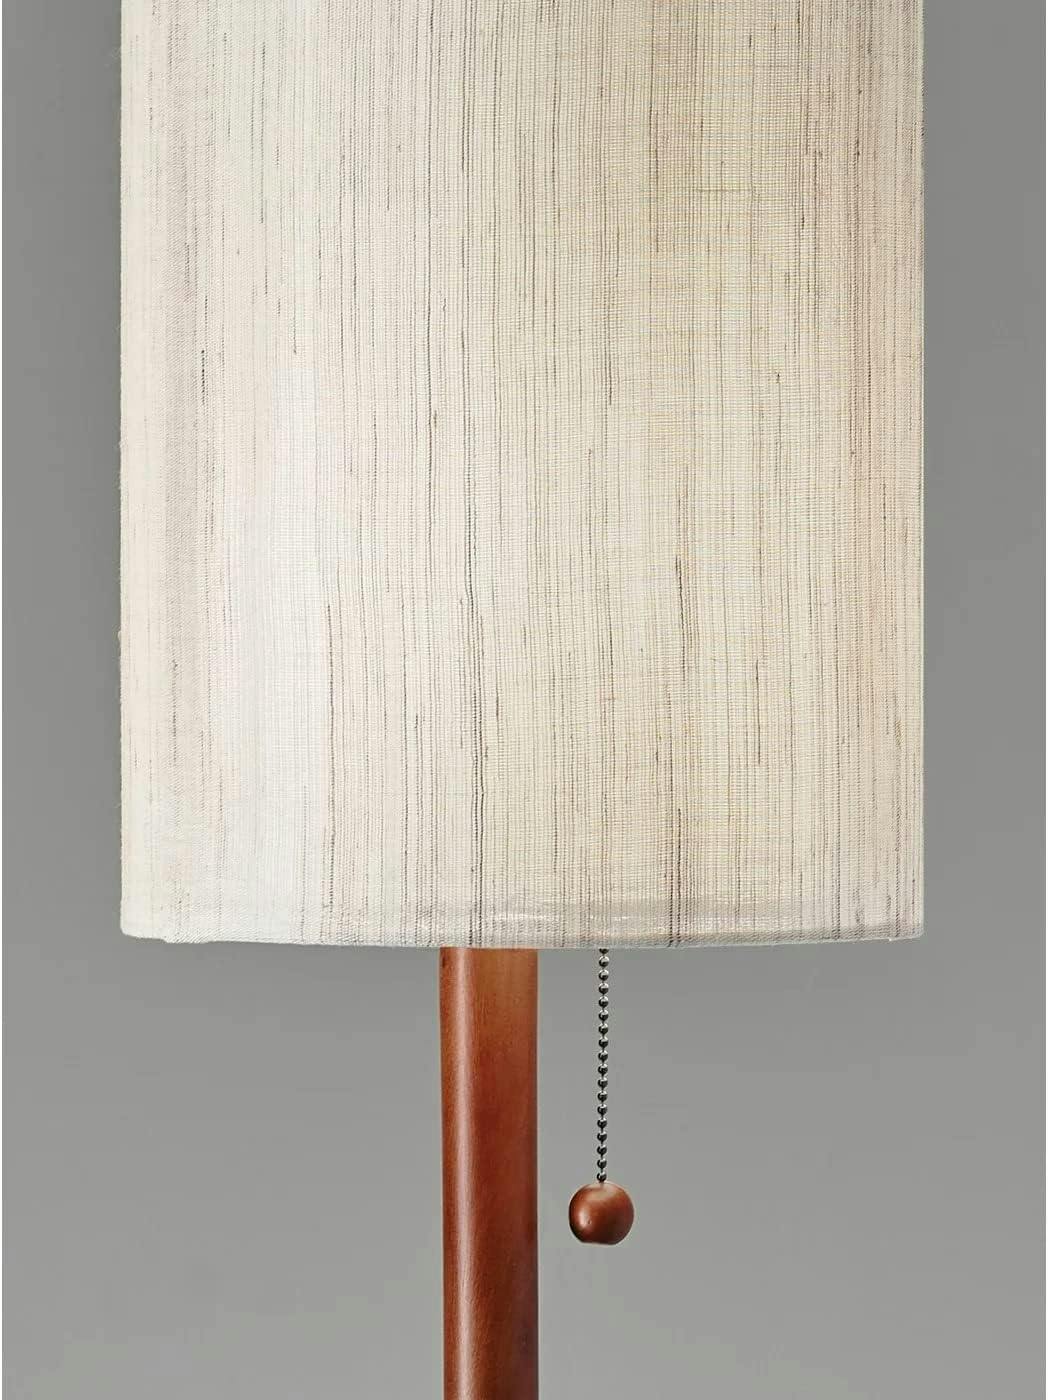 Moxie Walnut Wood Table Lamp